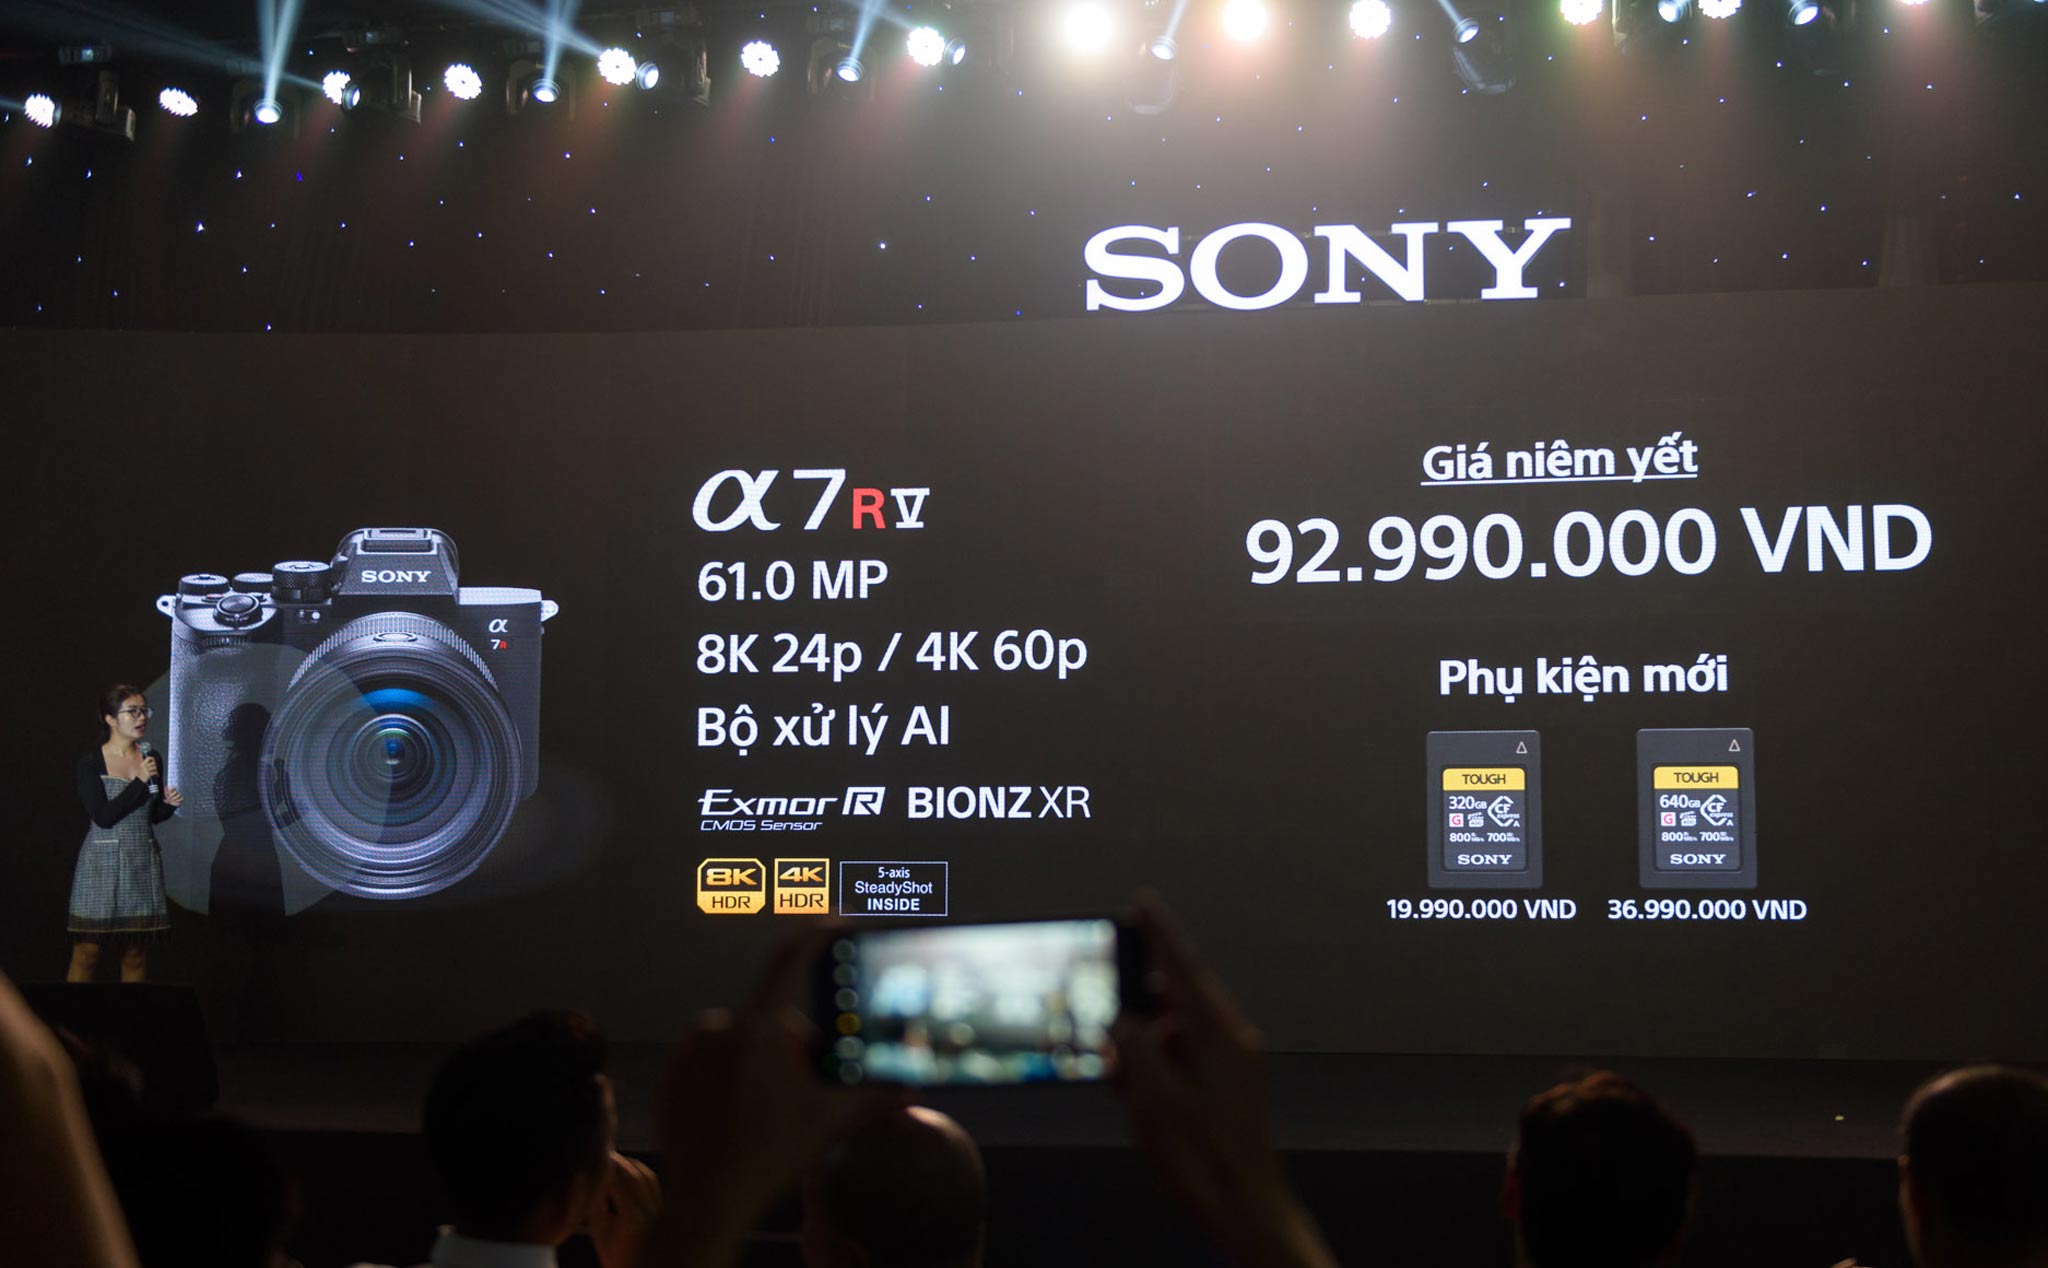 Sony A7R V chính thức ra mắt ở Việt Nam, giá 92.990.000VNĐ, đặt trước với nhiều quà tặng